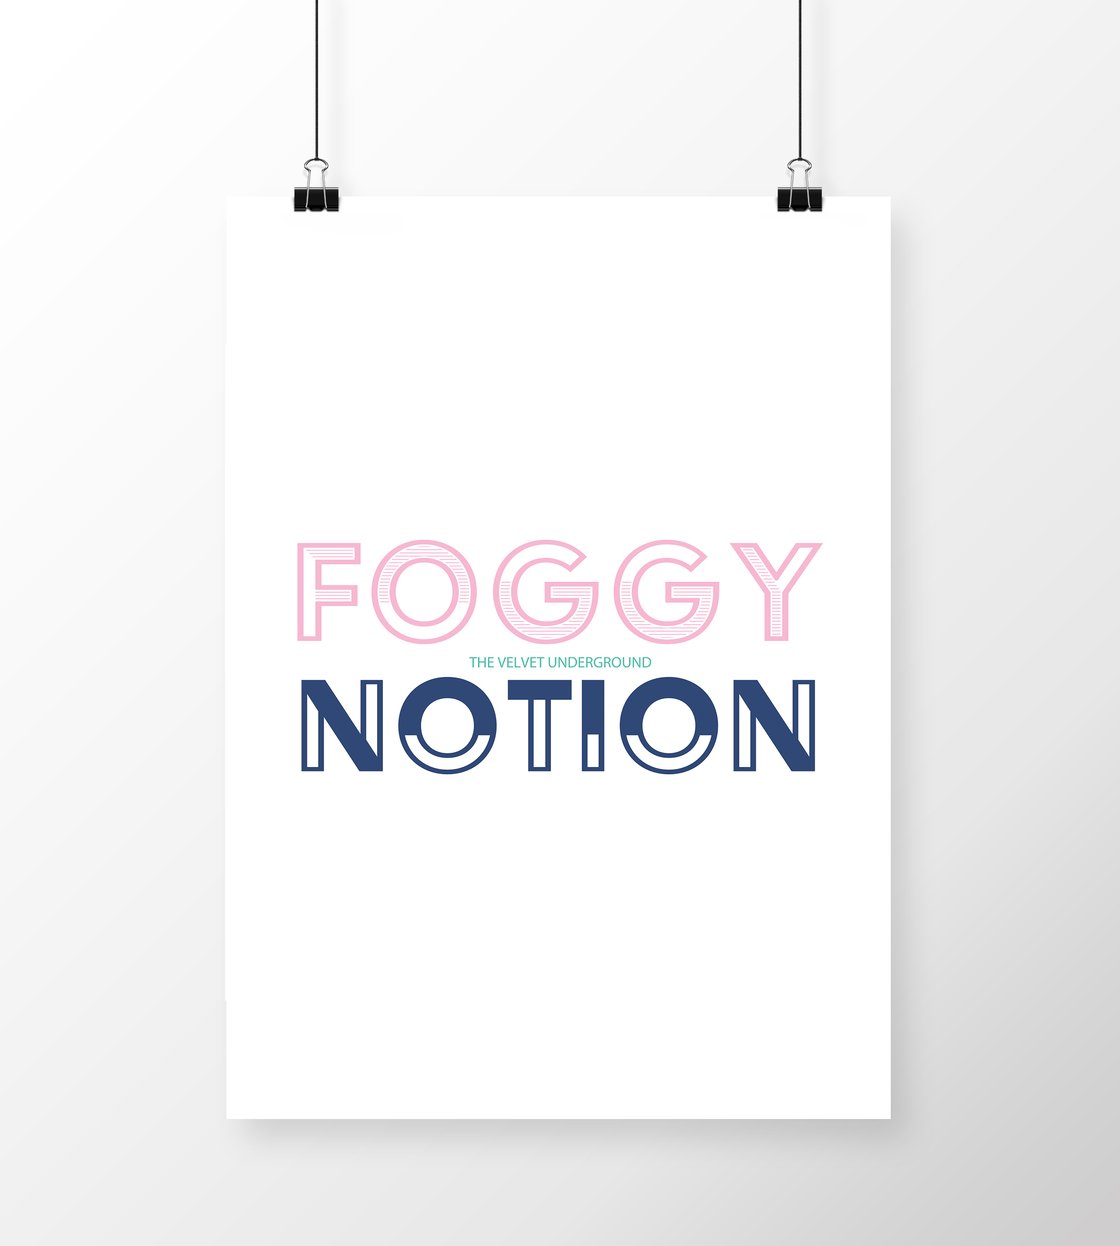 Image of Foggy Notion